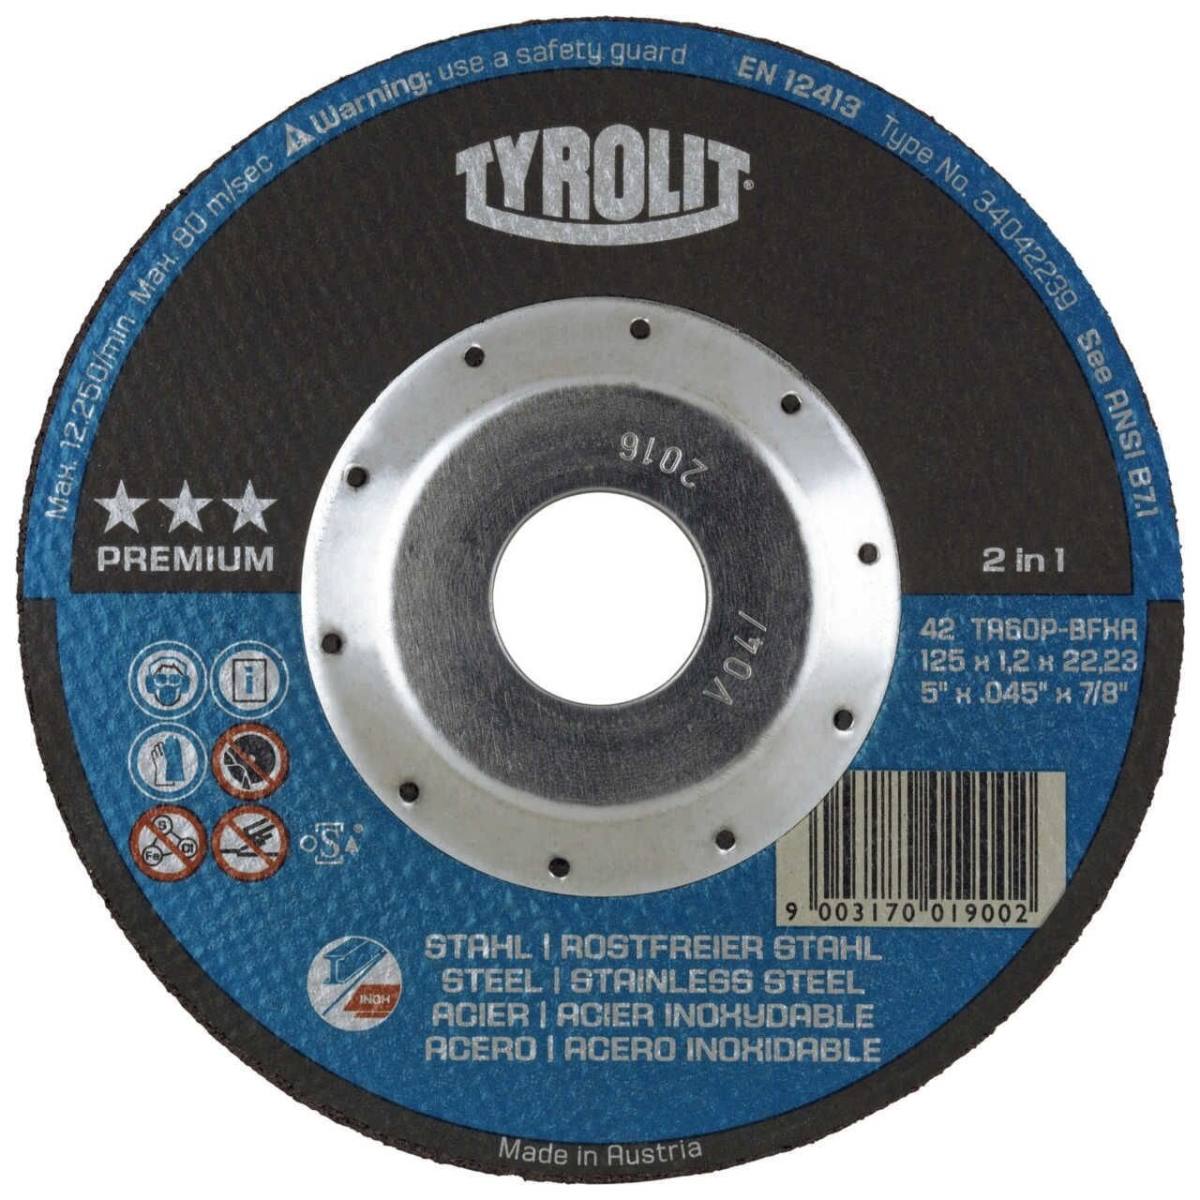 TYROLIT Trennscheiben DxUxH 150x1,2x22,23 Mit DEEP Cut Protection für Stahl und Edelstahl, Form: 42 - gekröpfte Ausführung, Art. 34042240